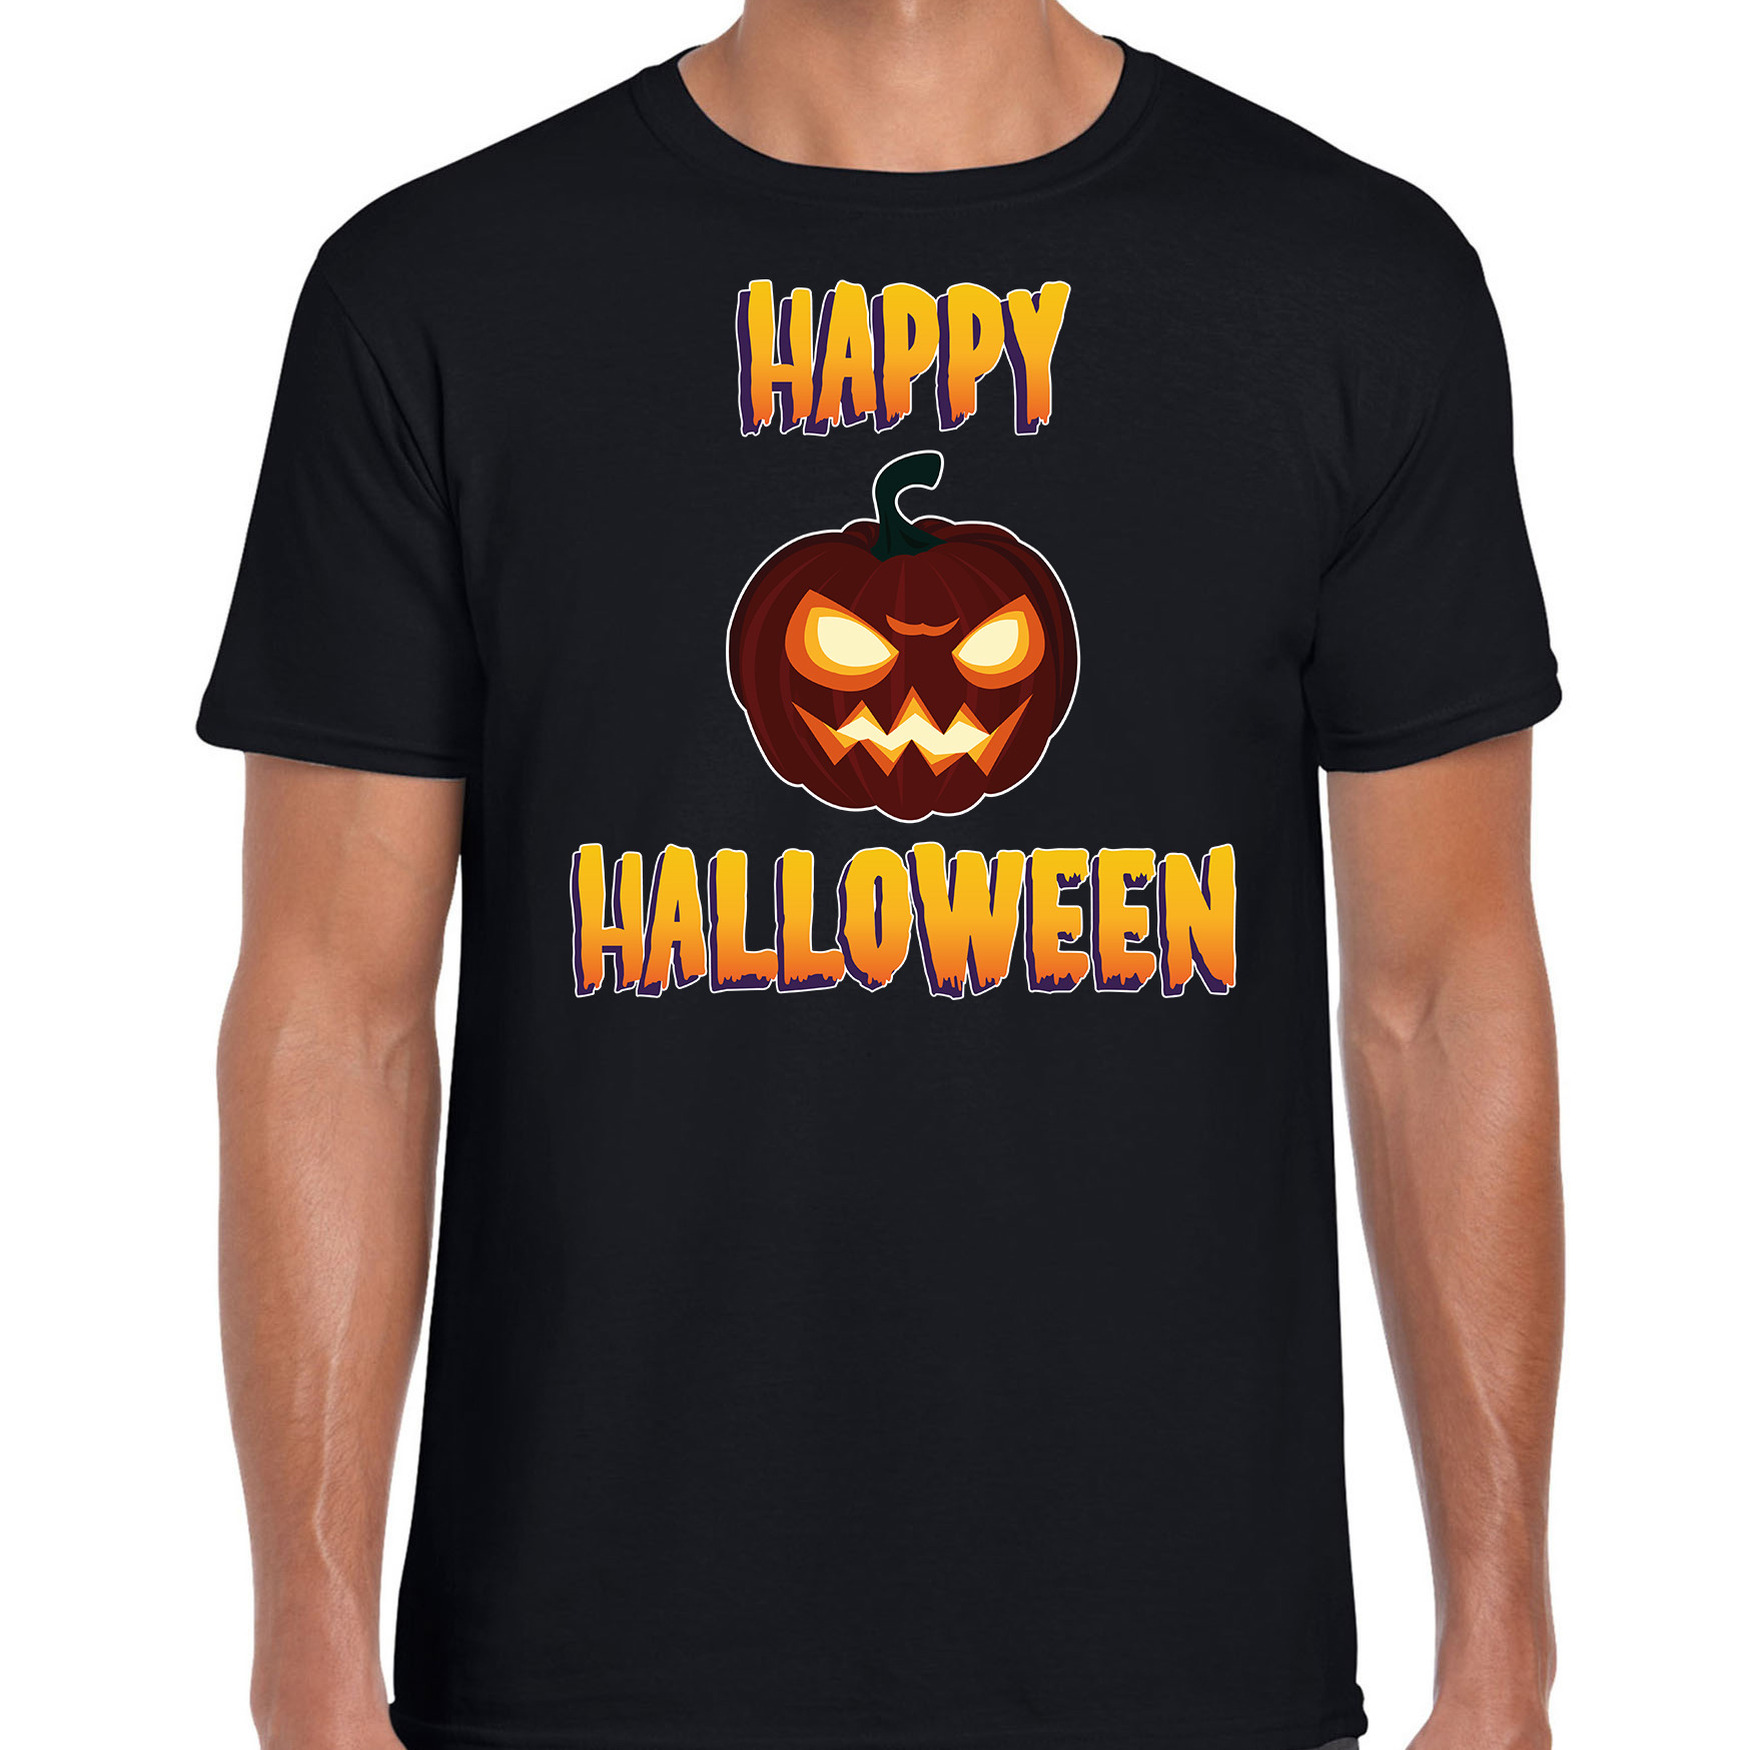 Happy Halloween horror pompoen verkleed t-shirt zwart voor heren